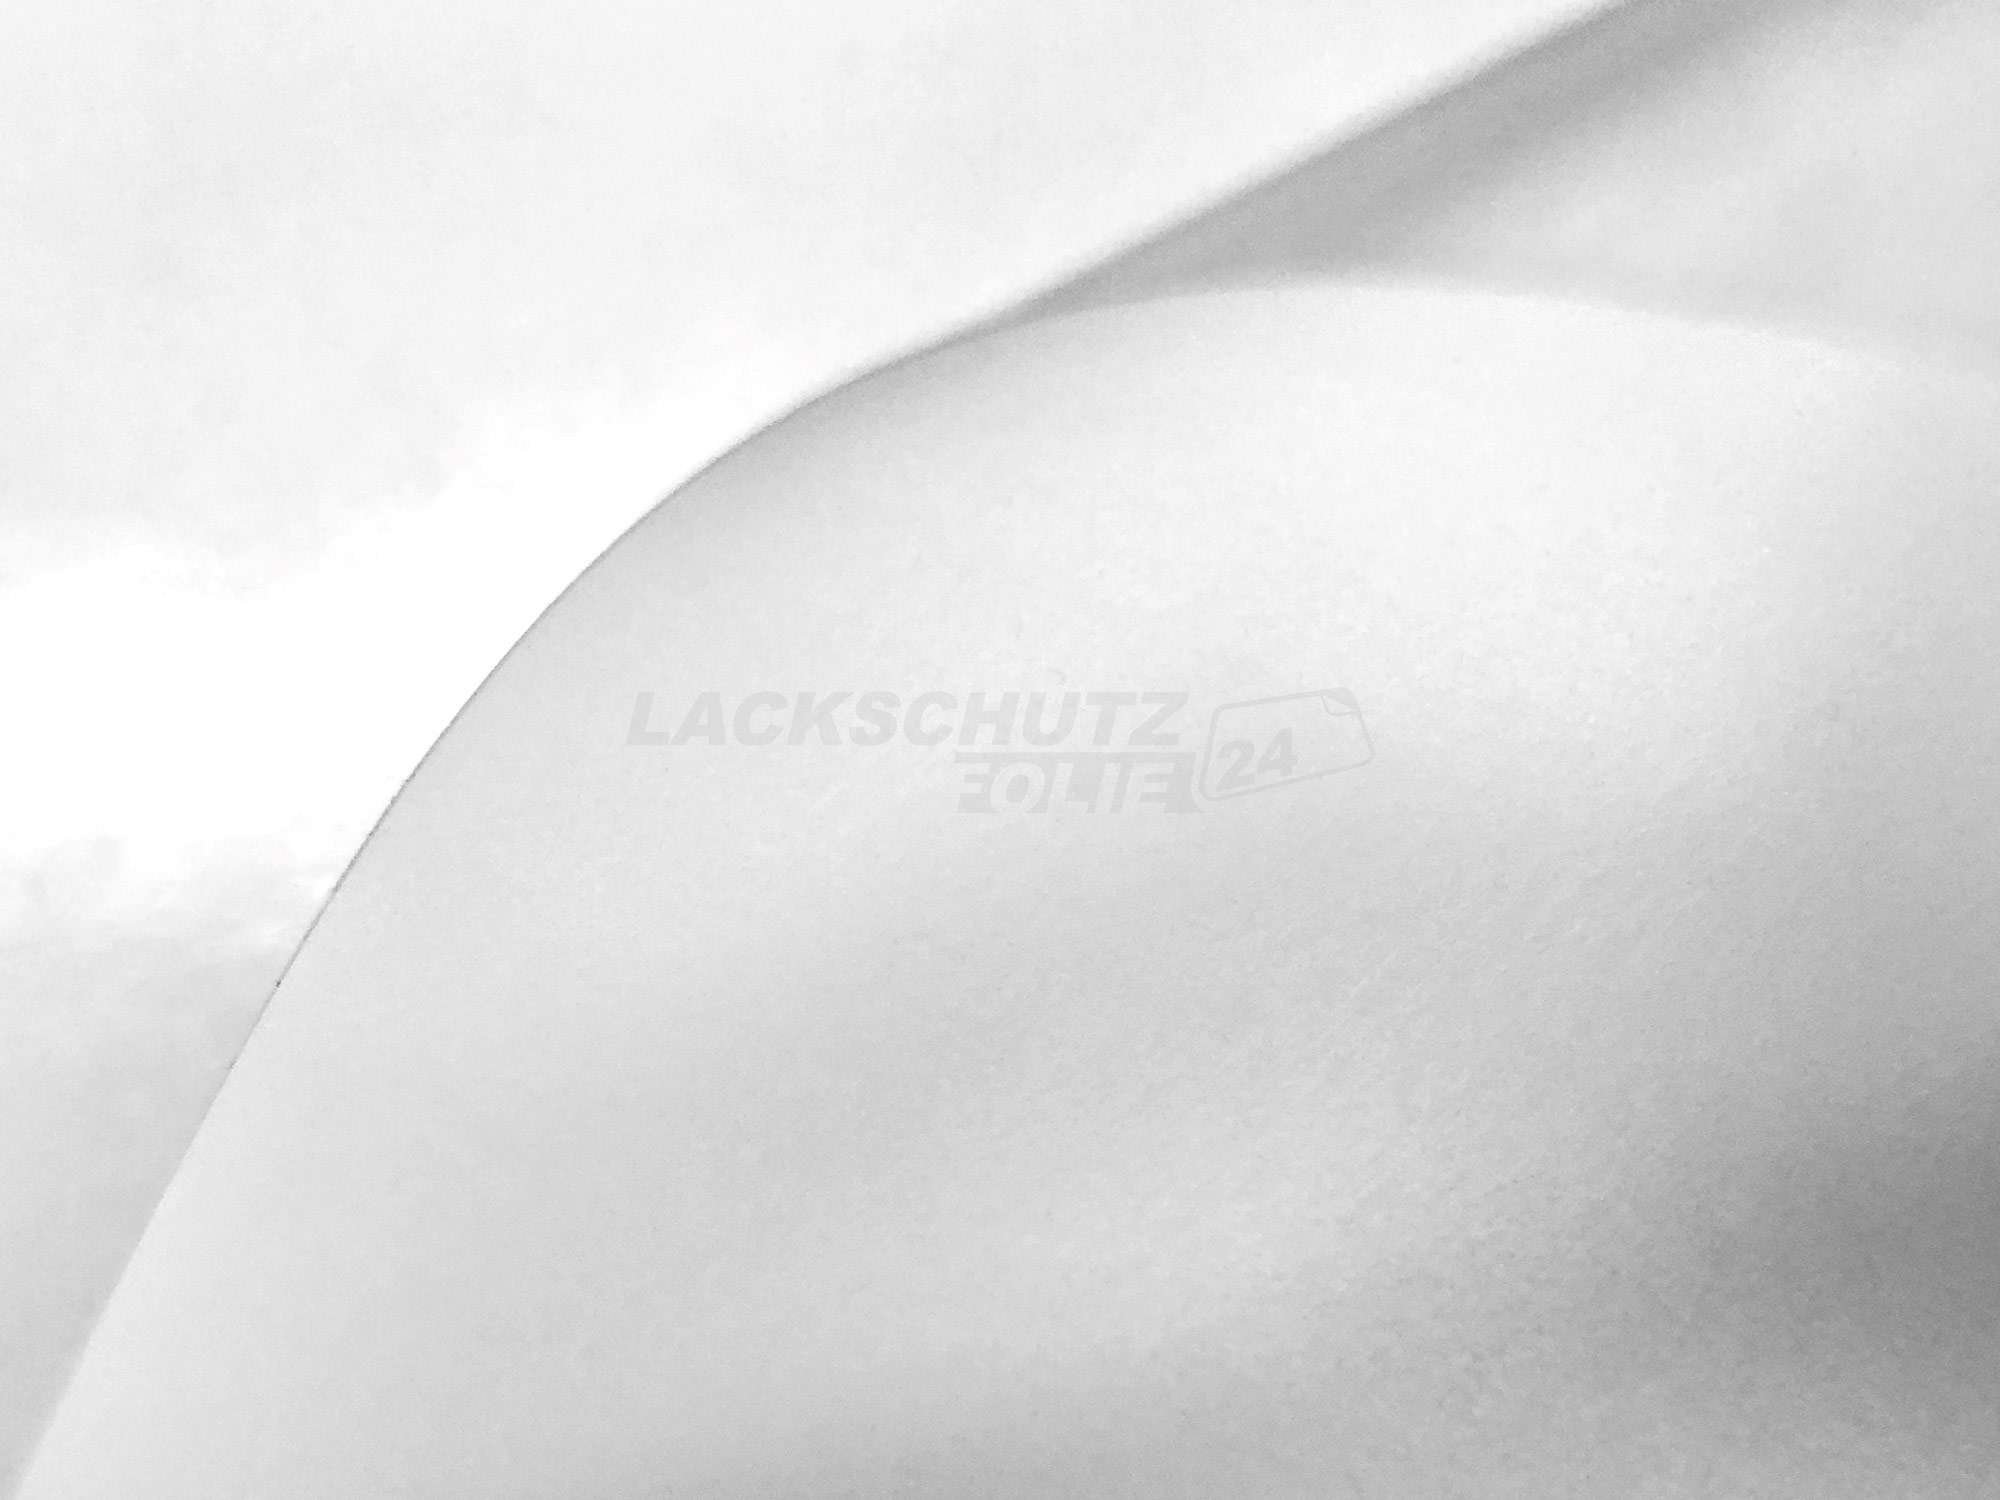 Ladekantenschutzfolie - Transparent Glatt MATT 110 µm stark  für Audi A3 Typ 8P/8PA, Facelift, BJ 2008-2012